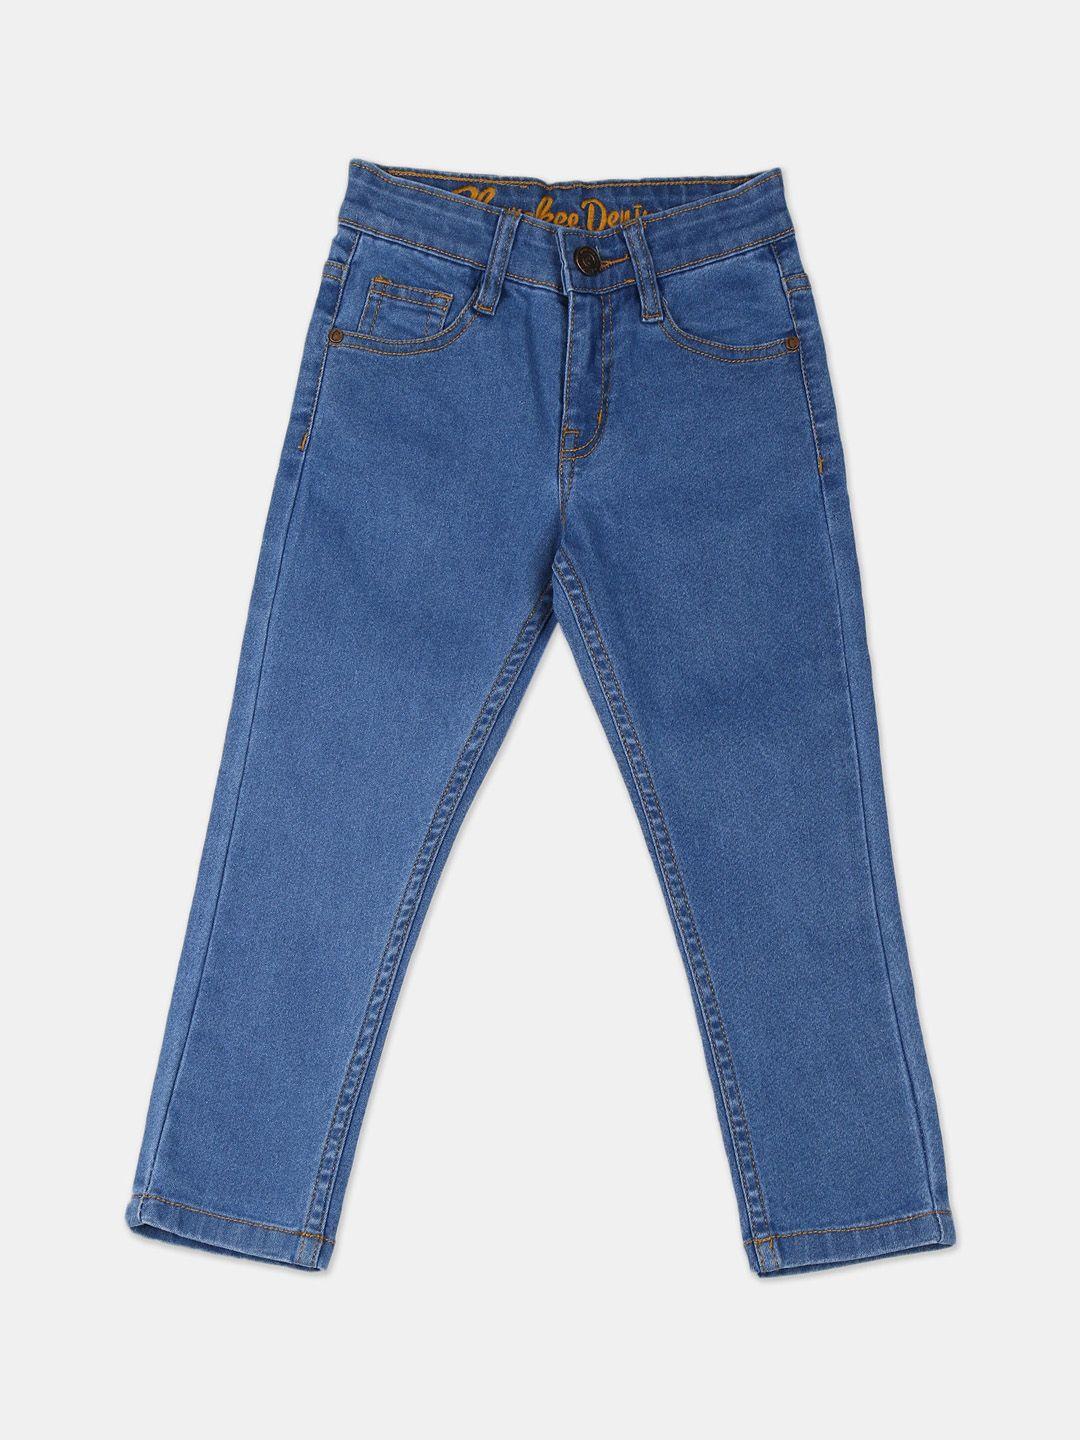 cherokee boys blue slim fit mid-rise clean look jeans